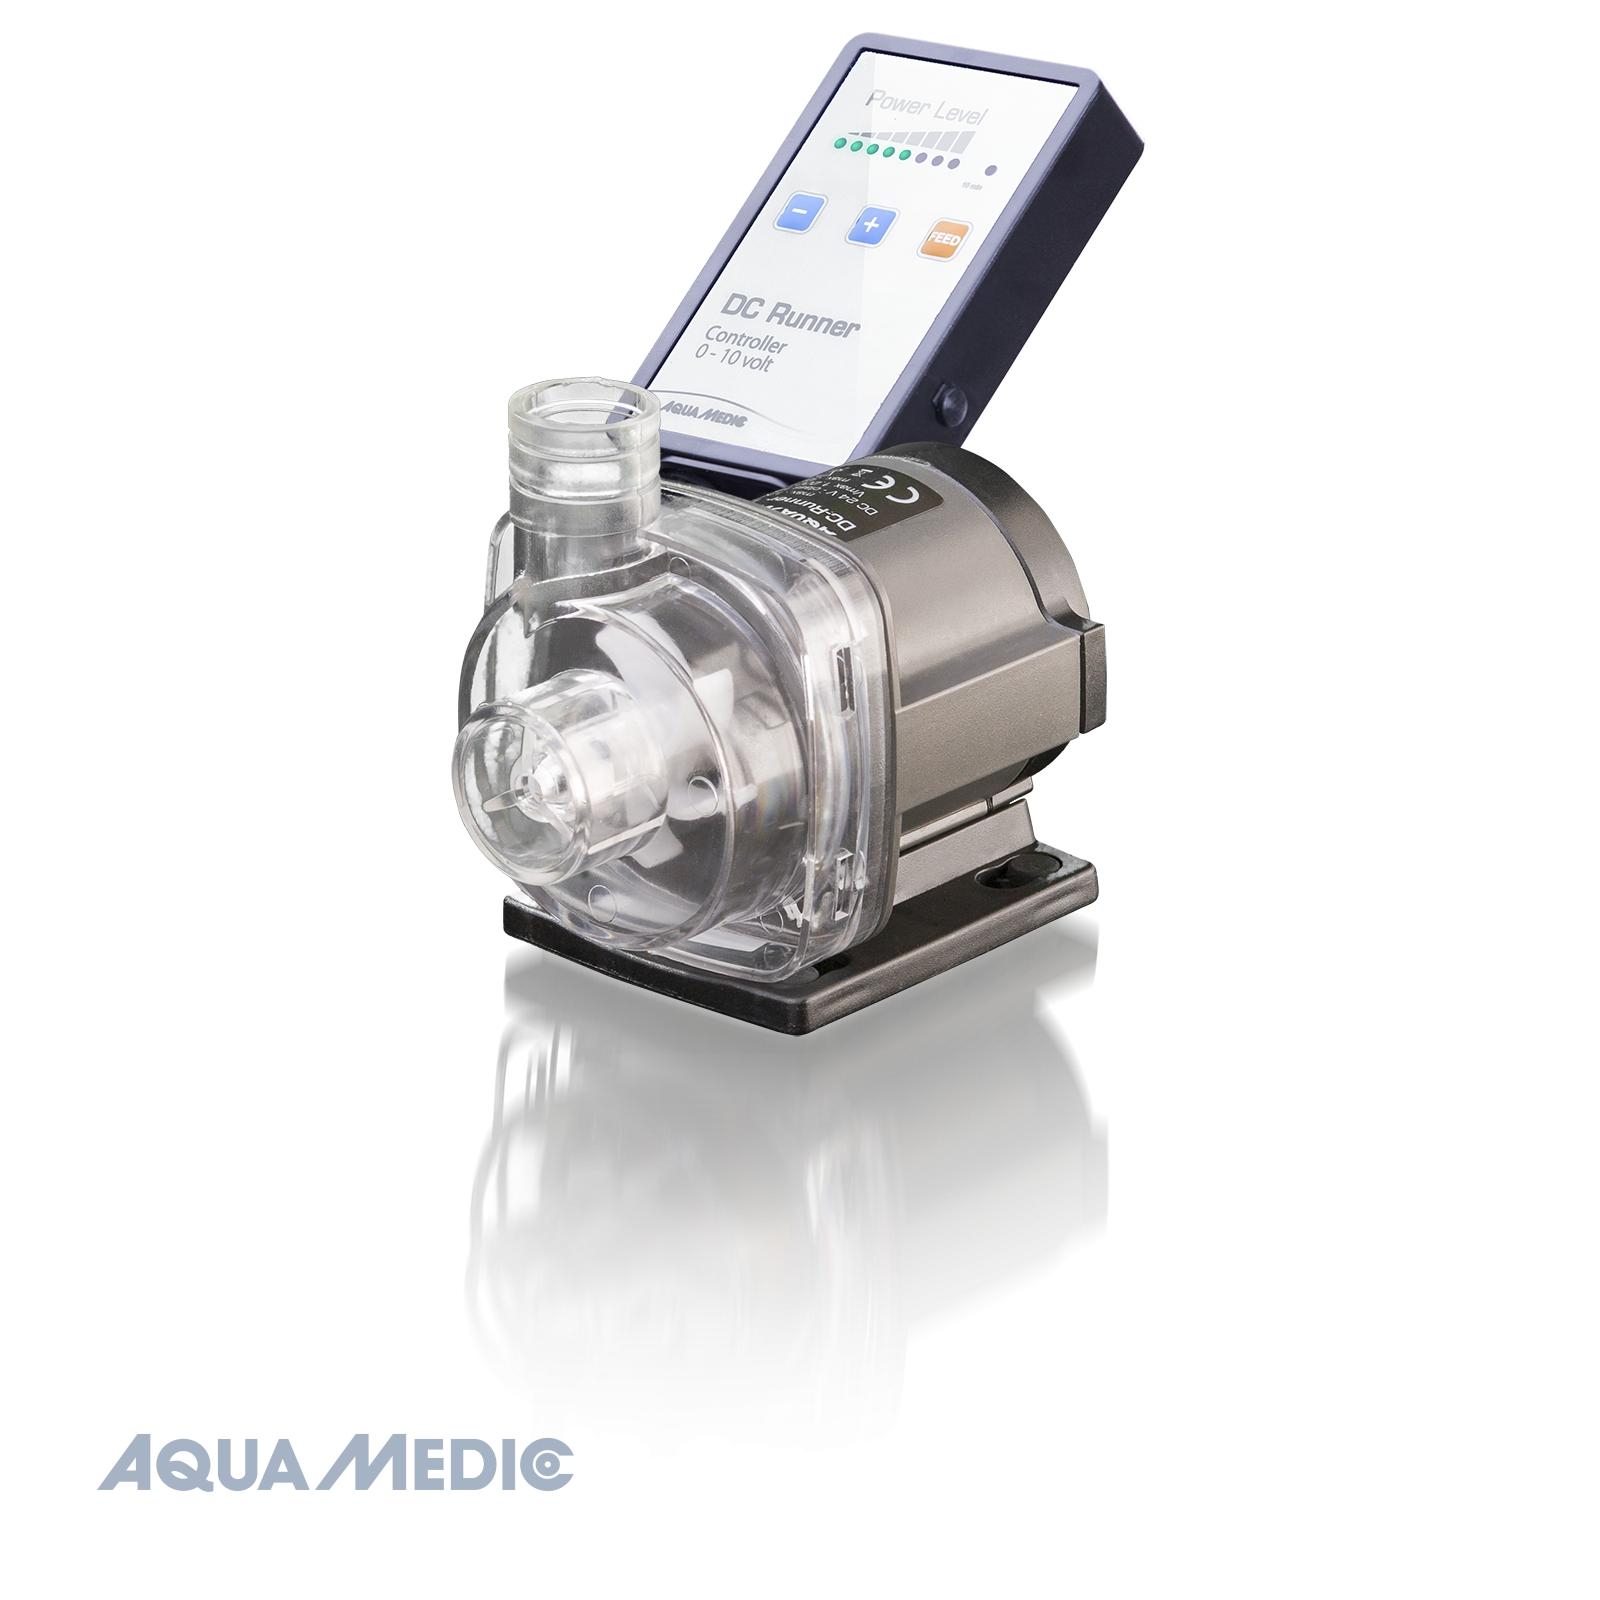 Aqua Medic Power Flotor L